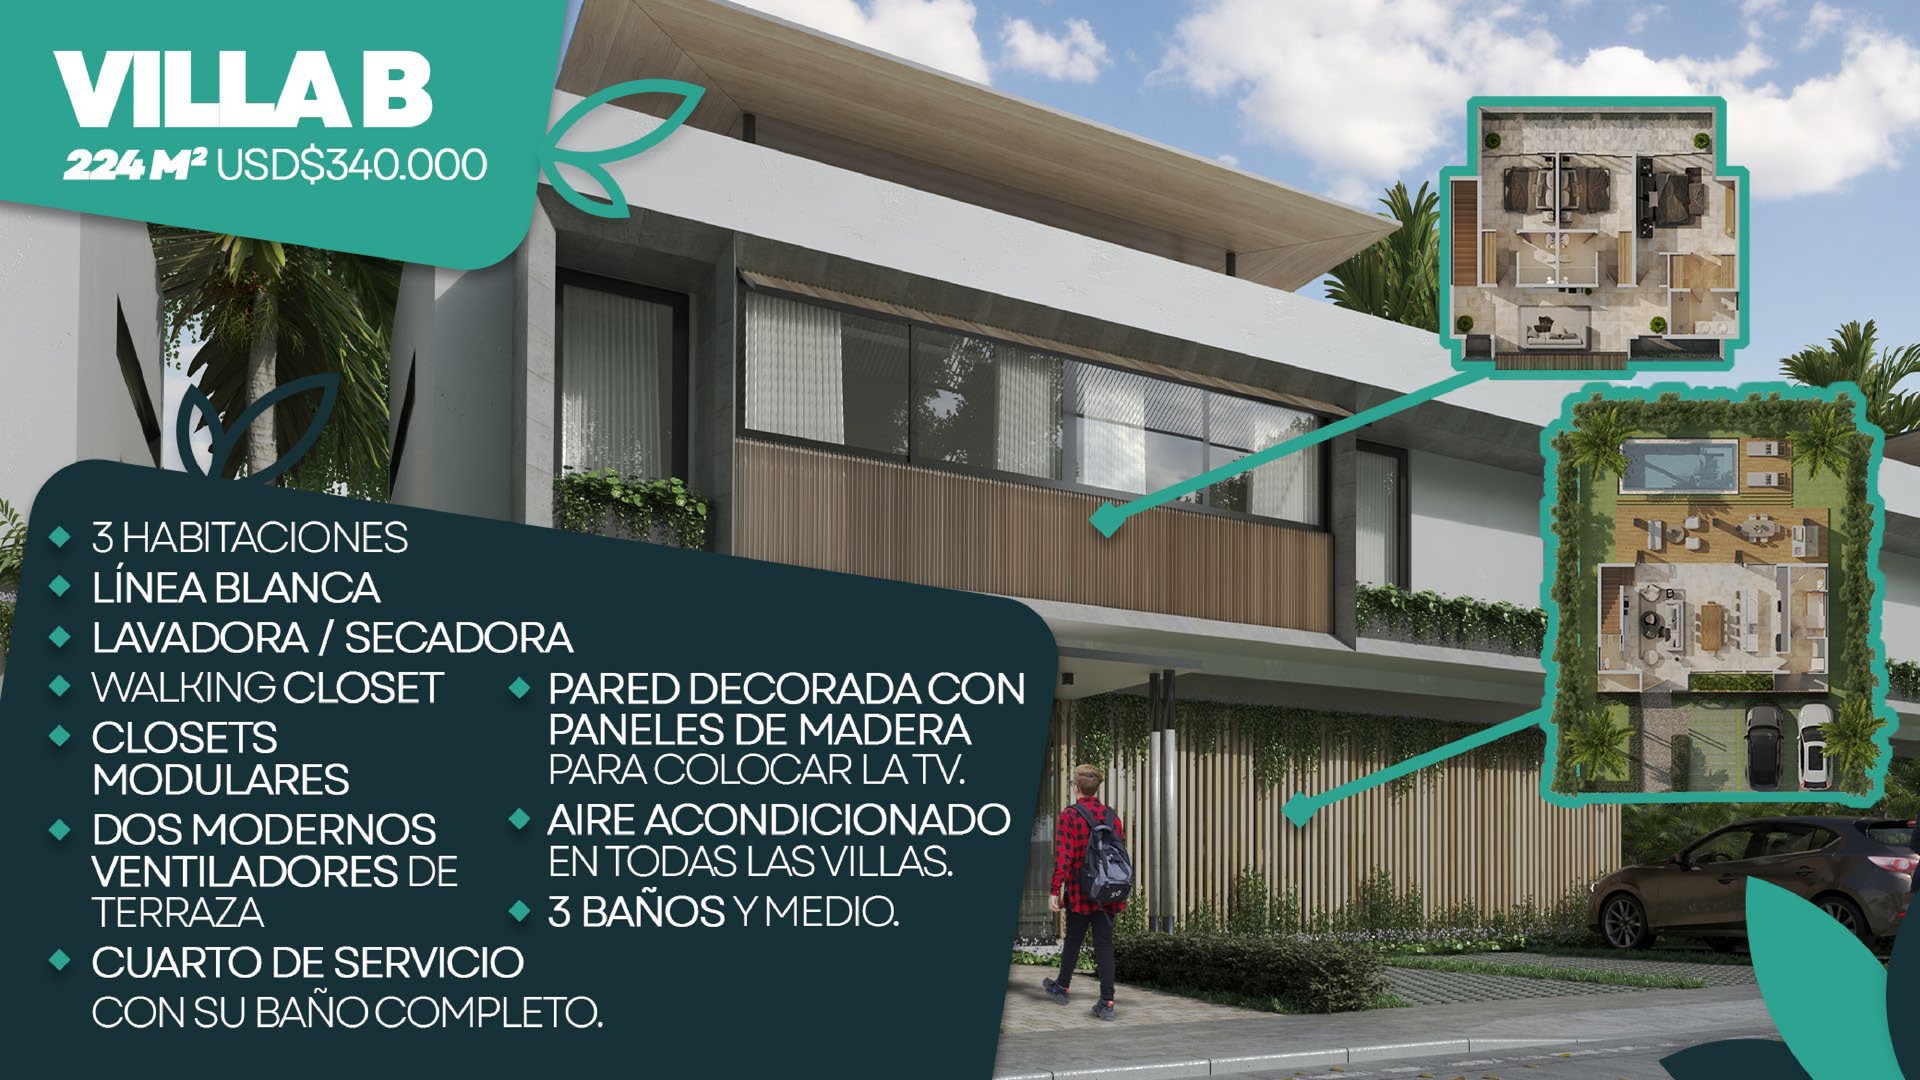 casas vacacionales y villas - Hermoso Proyecto En Construccion En Punta Cana, Villas De 2 Y 3 Hab.  1